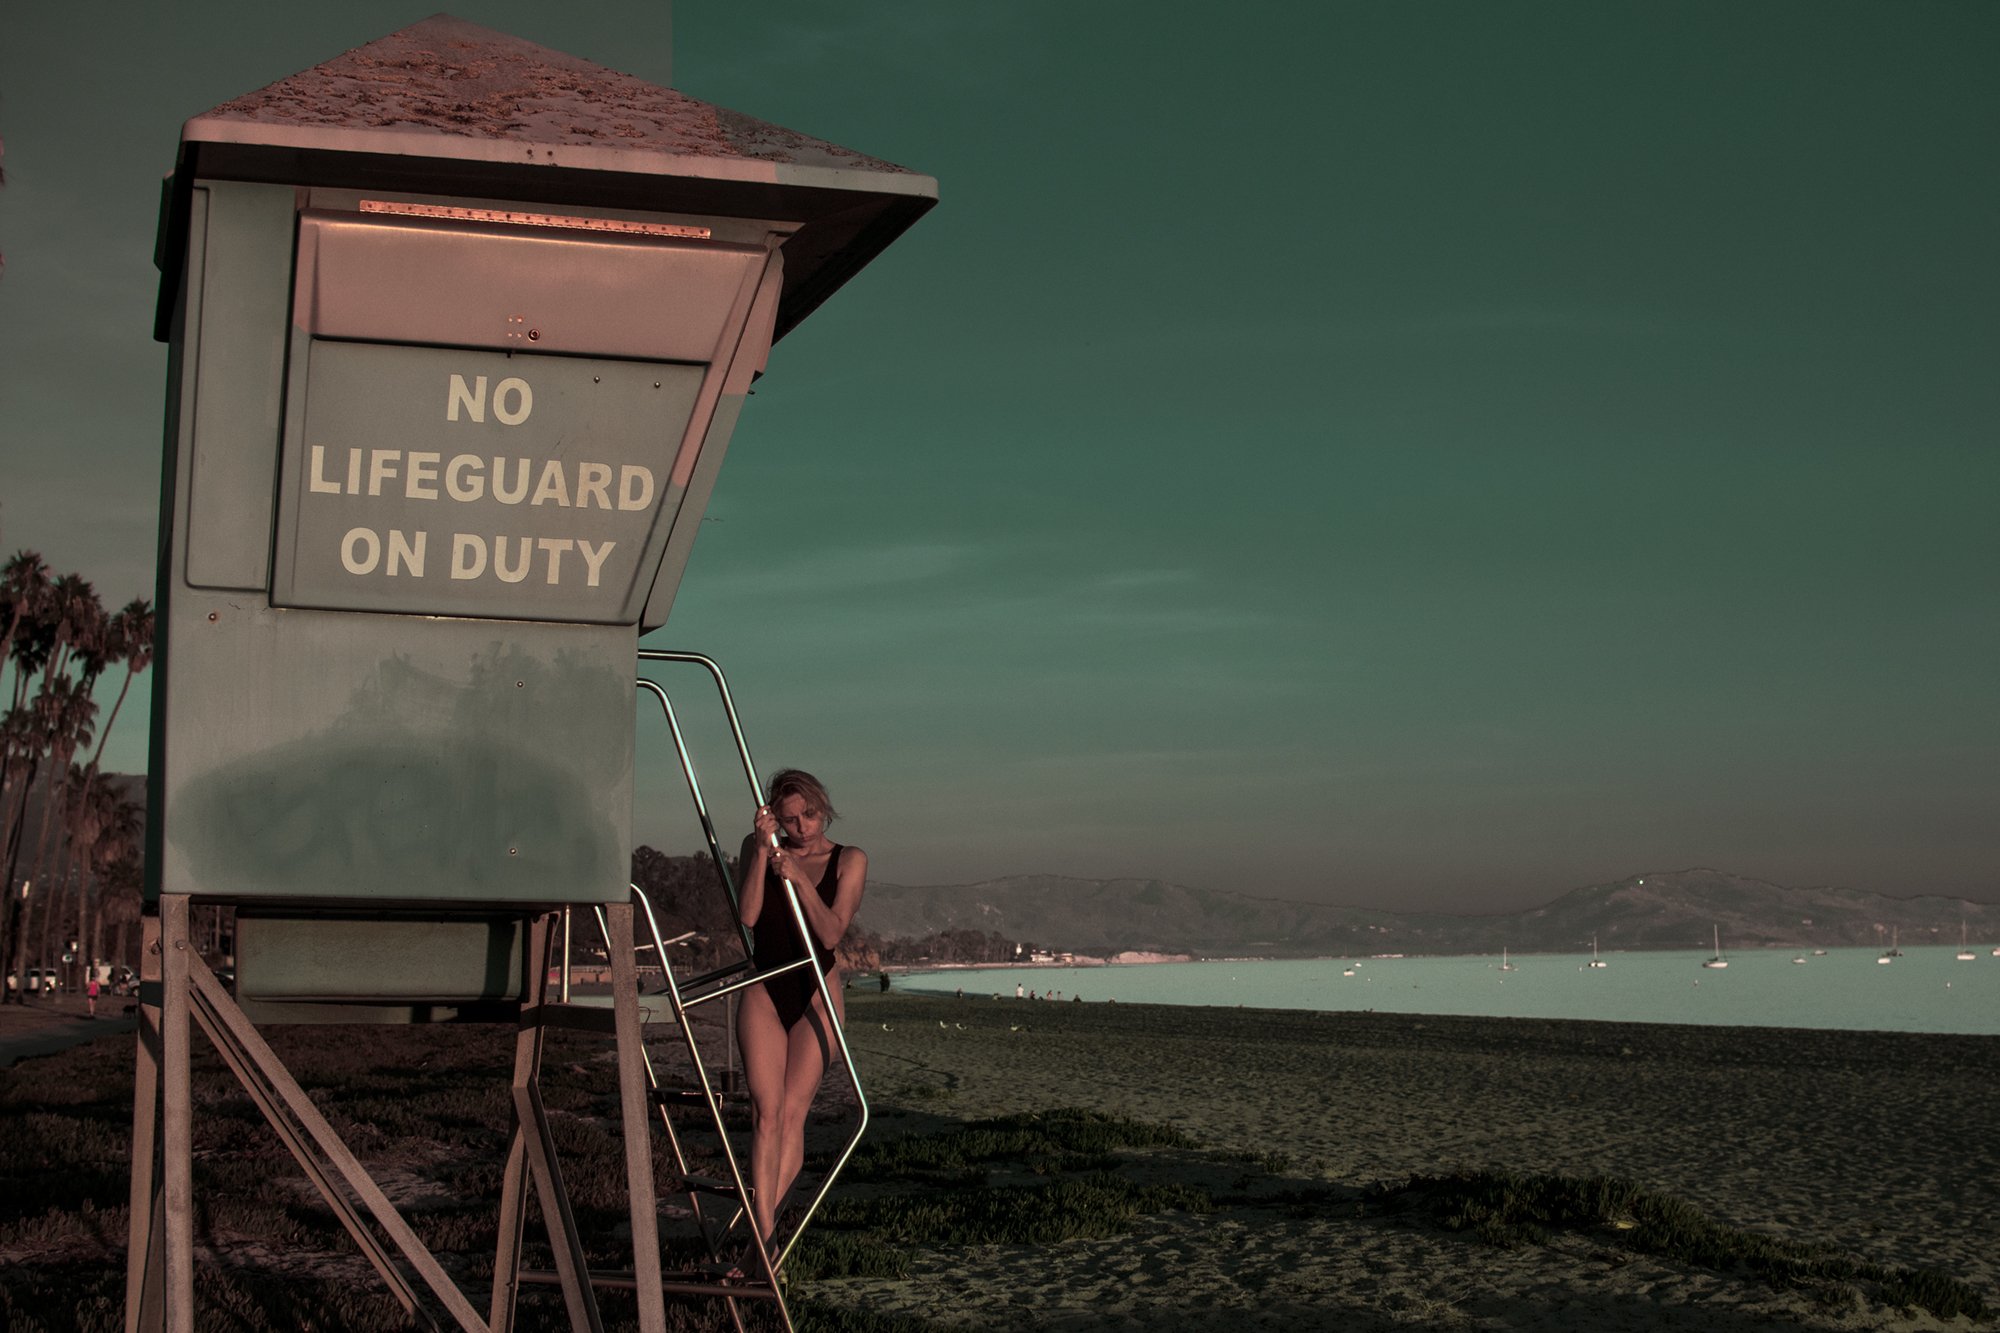  No Lifeguard on Duty, 2017 